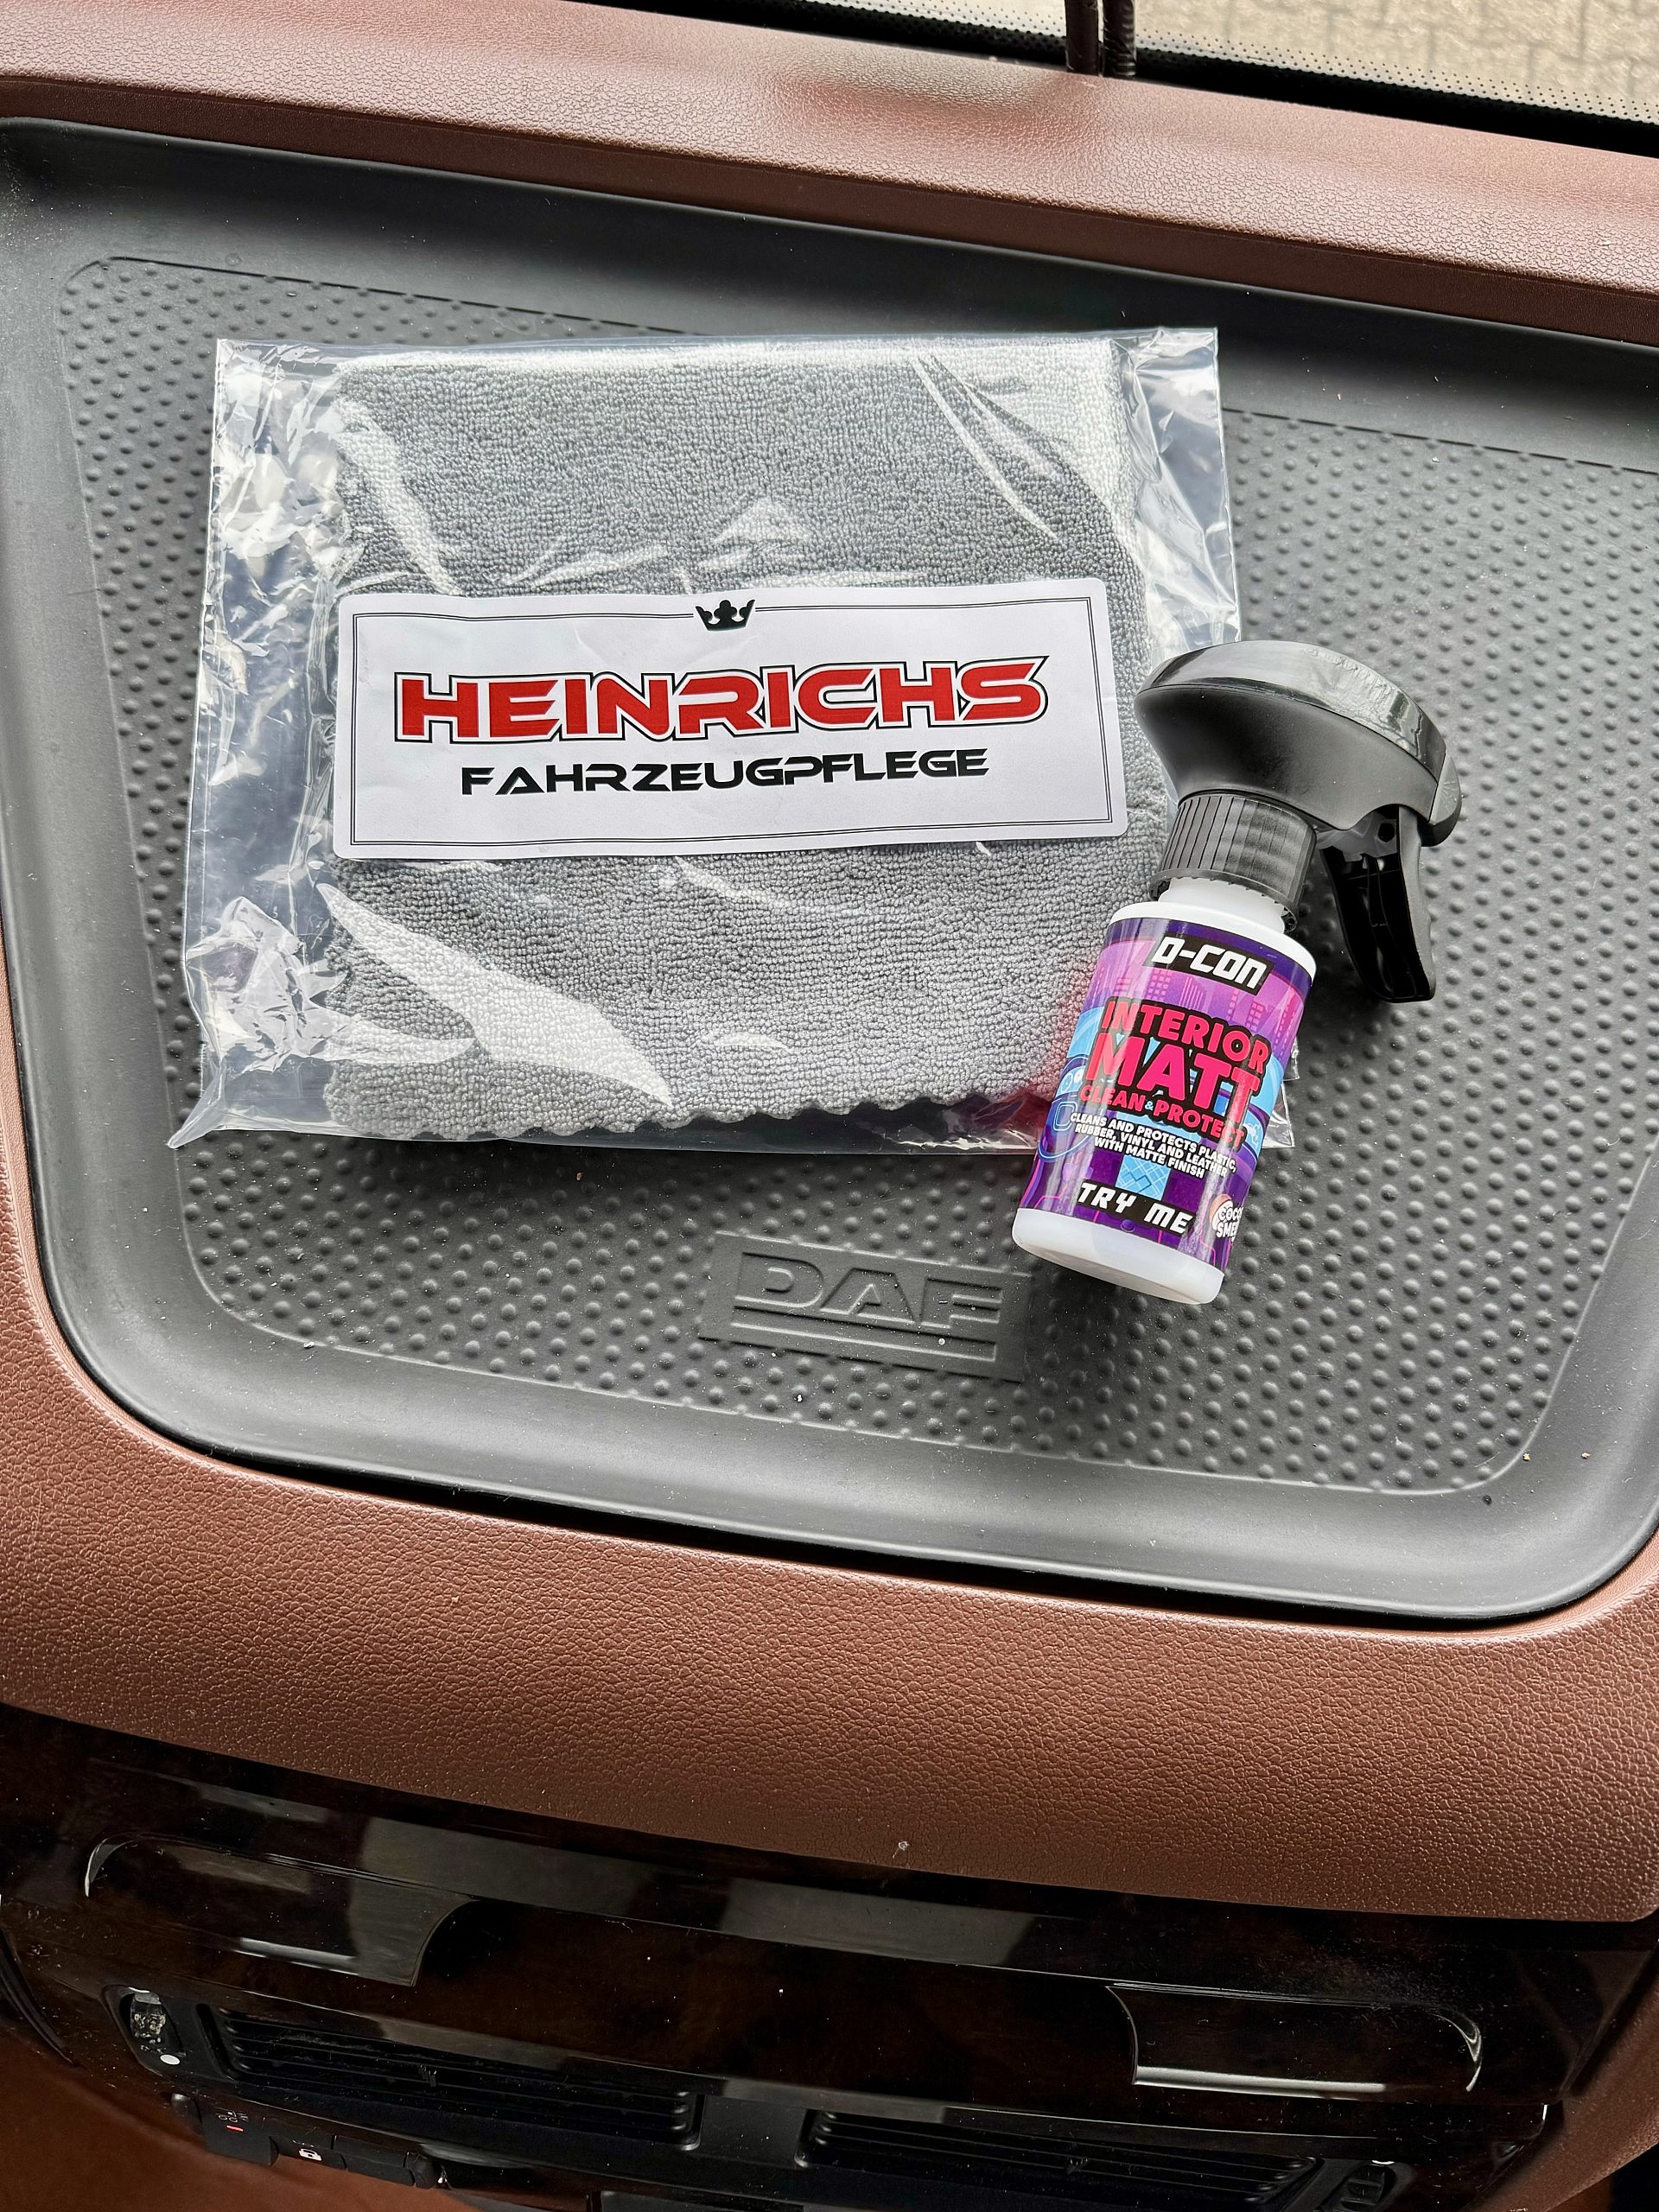 D-Con Interior Matt clean und protect und Heinrichs Fahrzeugpflege Mikrofasertuch randlos auf Armaturenbrett